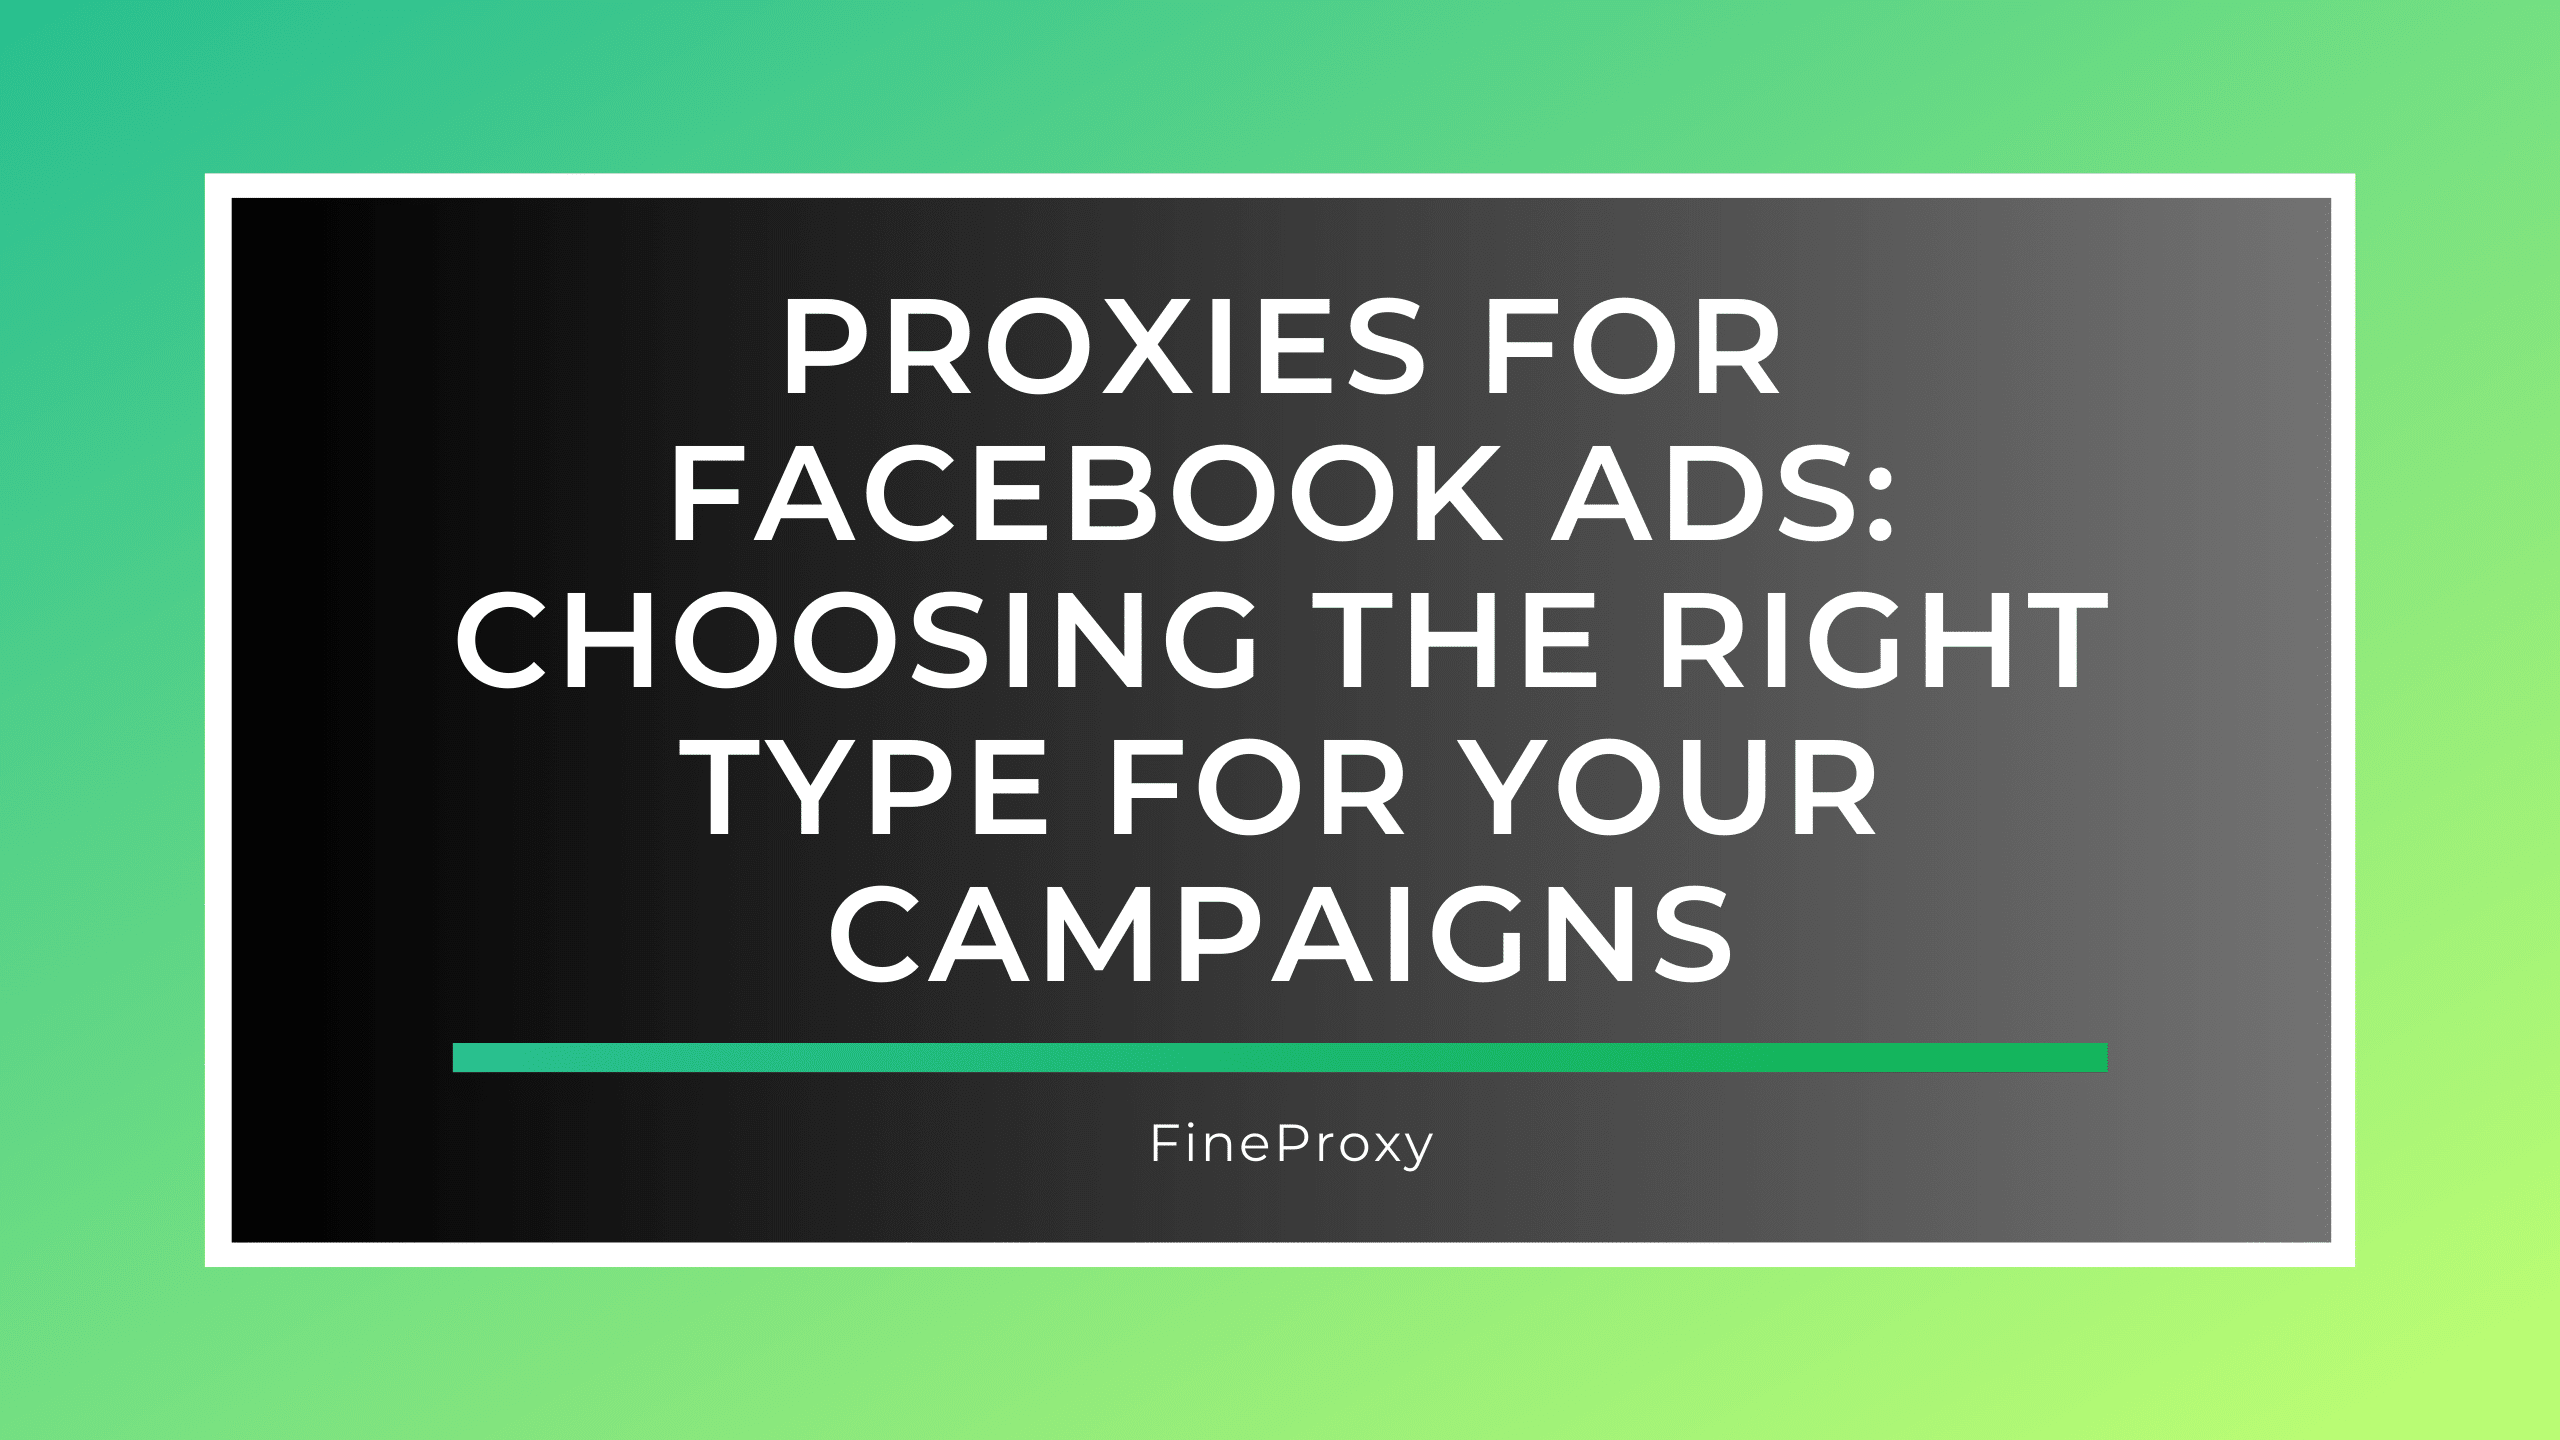 फेसबुक विज्ञापनों के लिए प्रॉक्सी: अपने अभियानों के लिए सही प्रकार का चयन करना